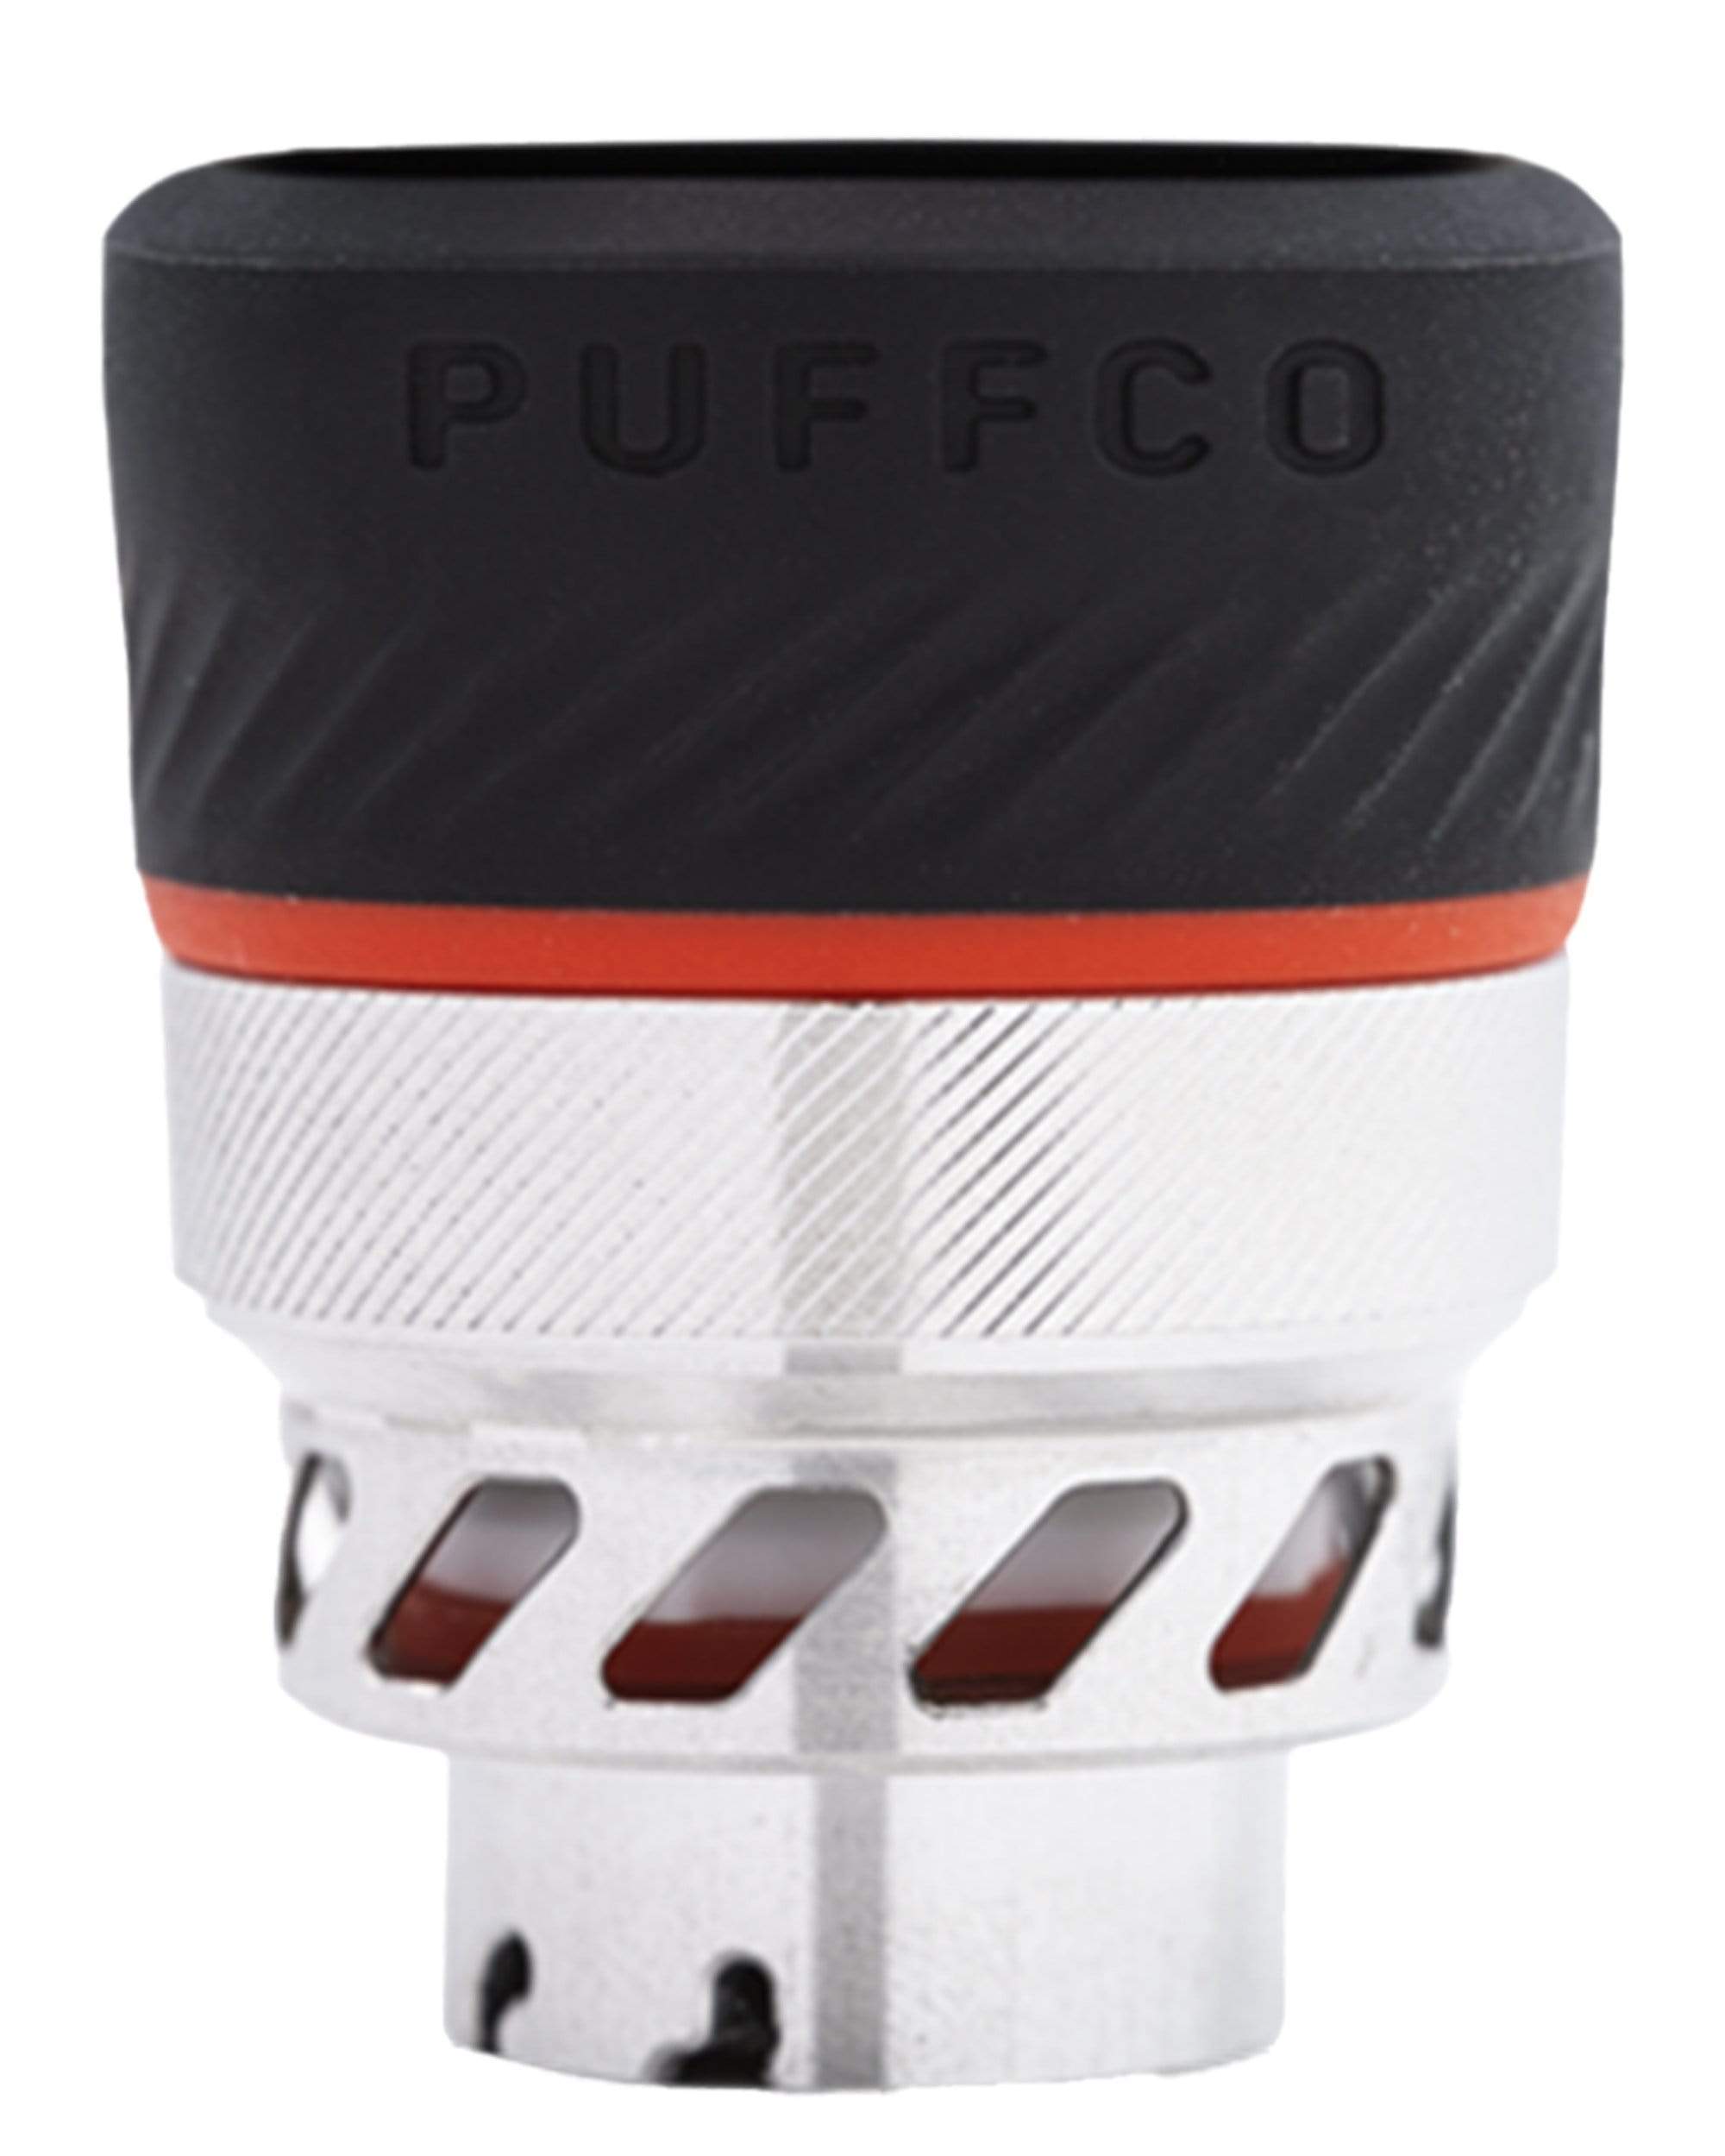 PuffCo Peak Pro 3D Chamber